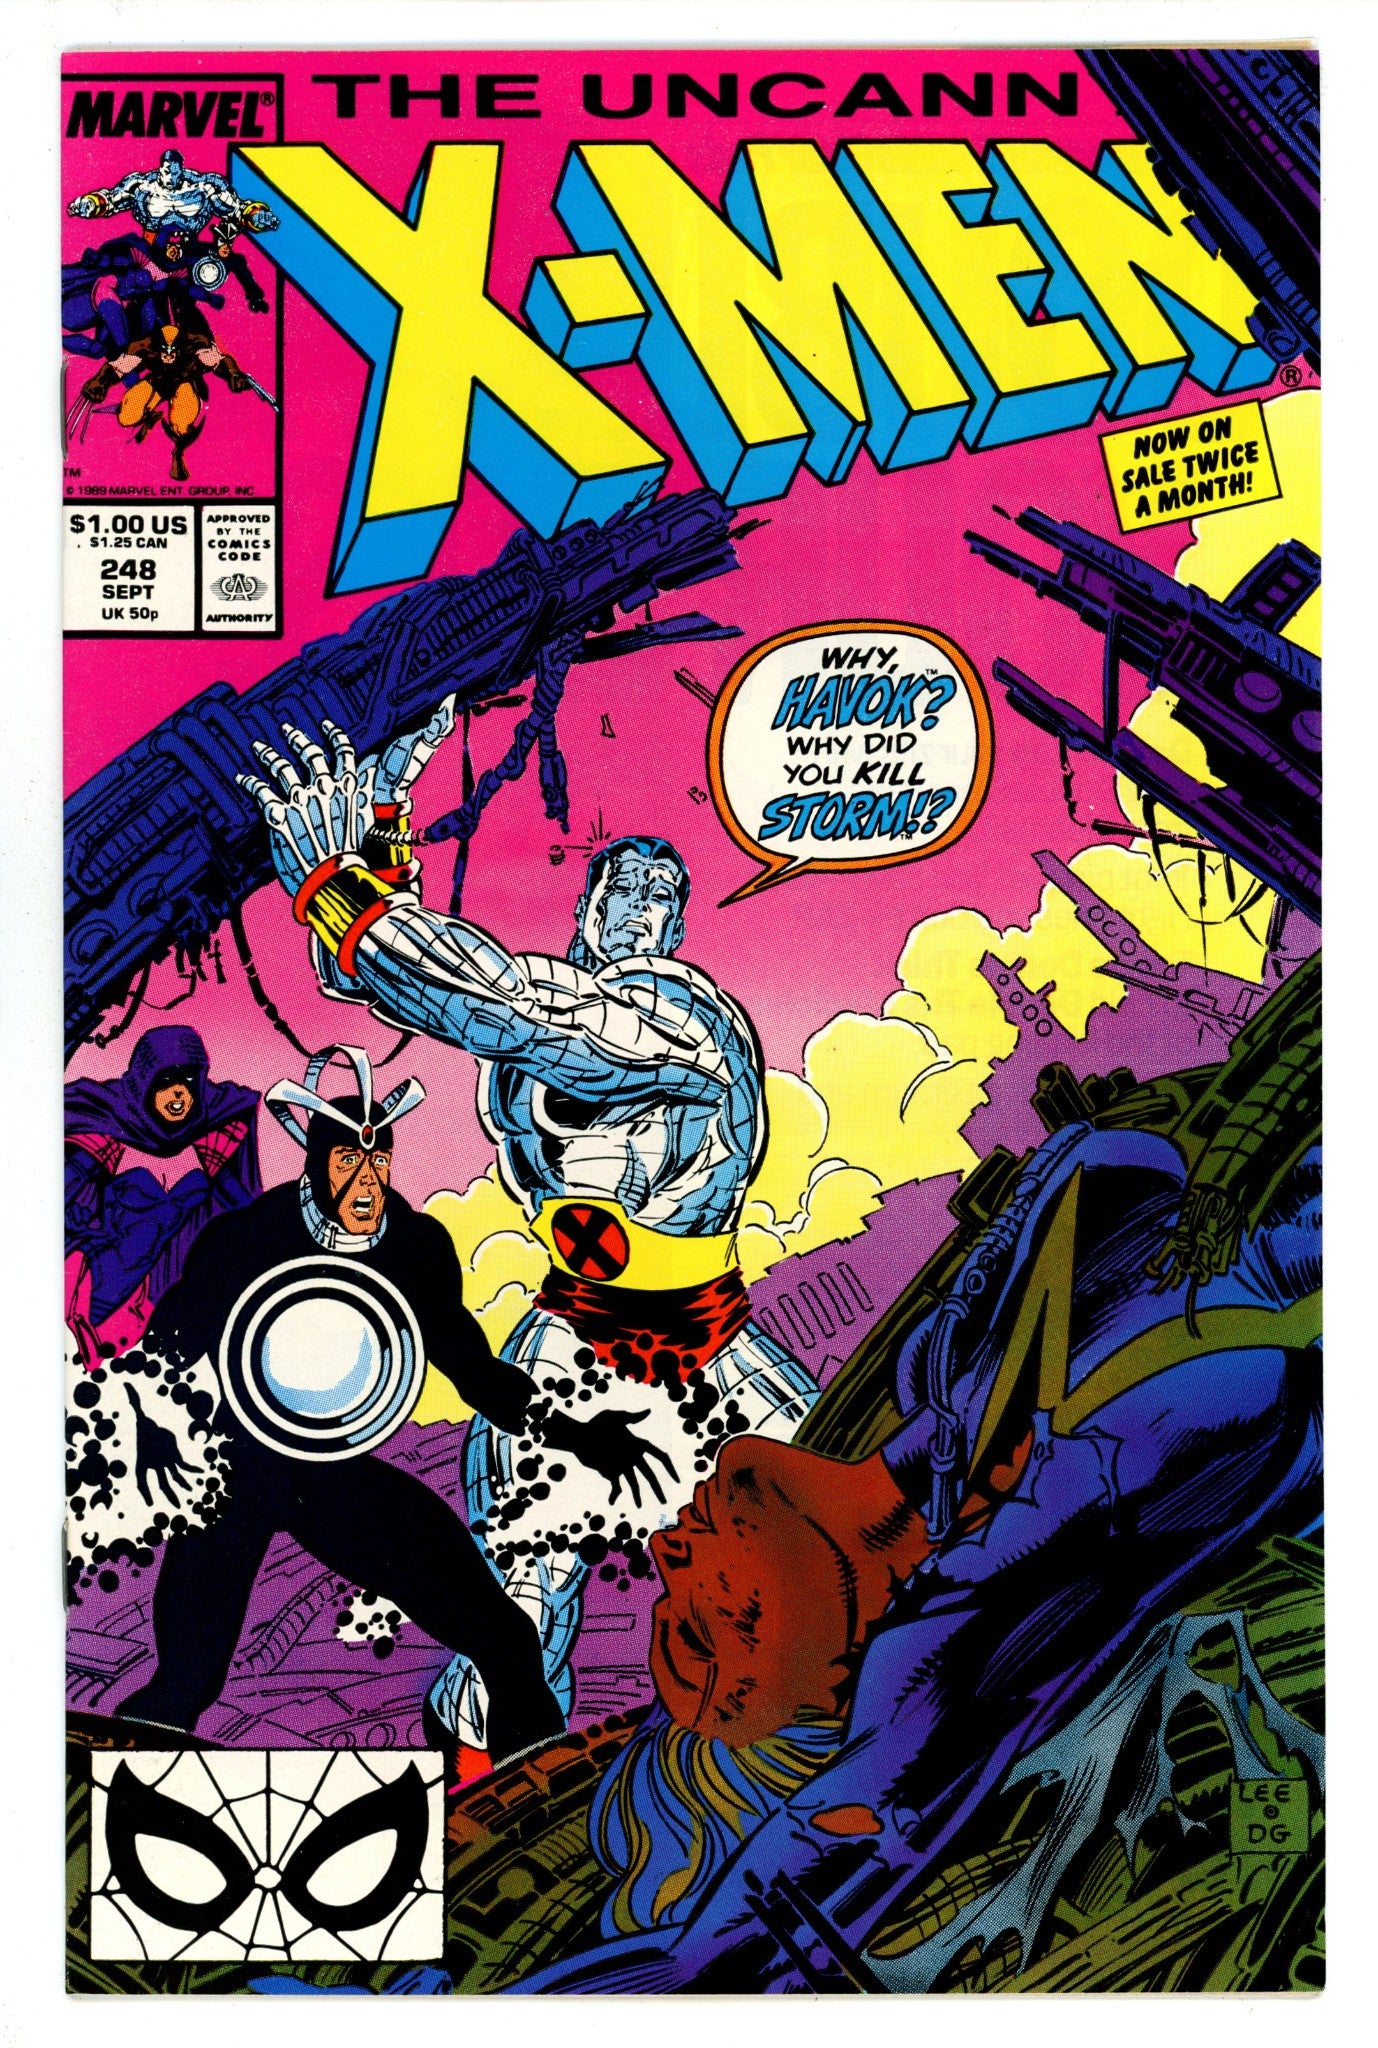 The Uncanny X-Men Vol 1 248 VF- (7.5) (1989) 